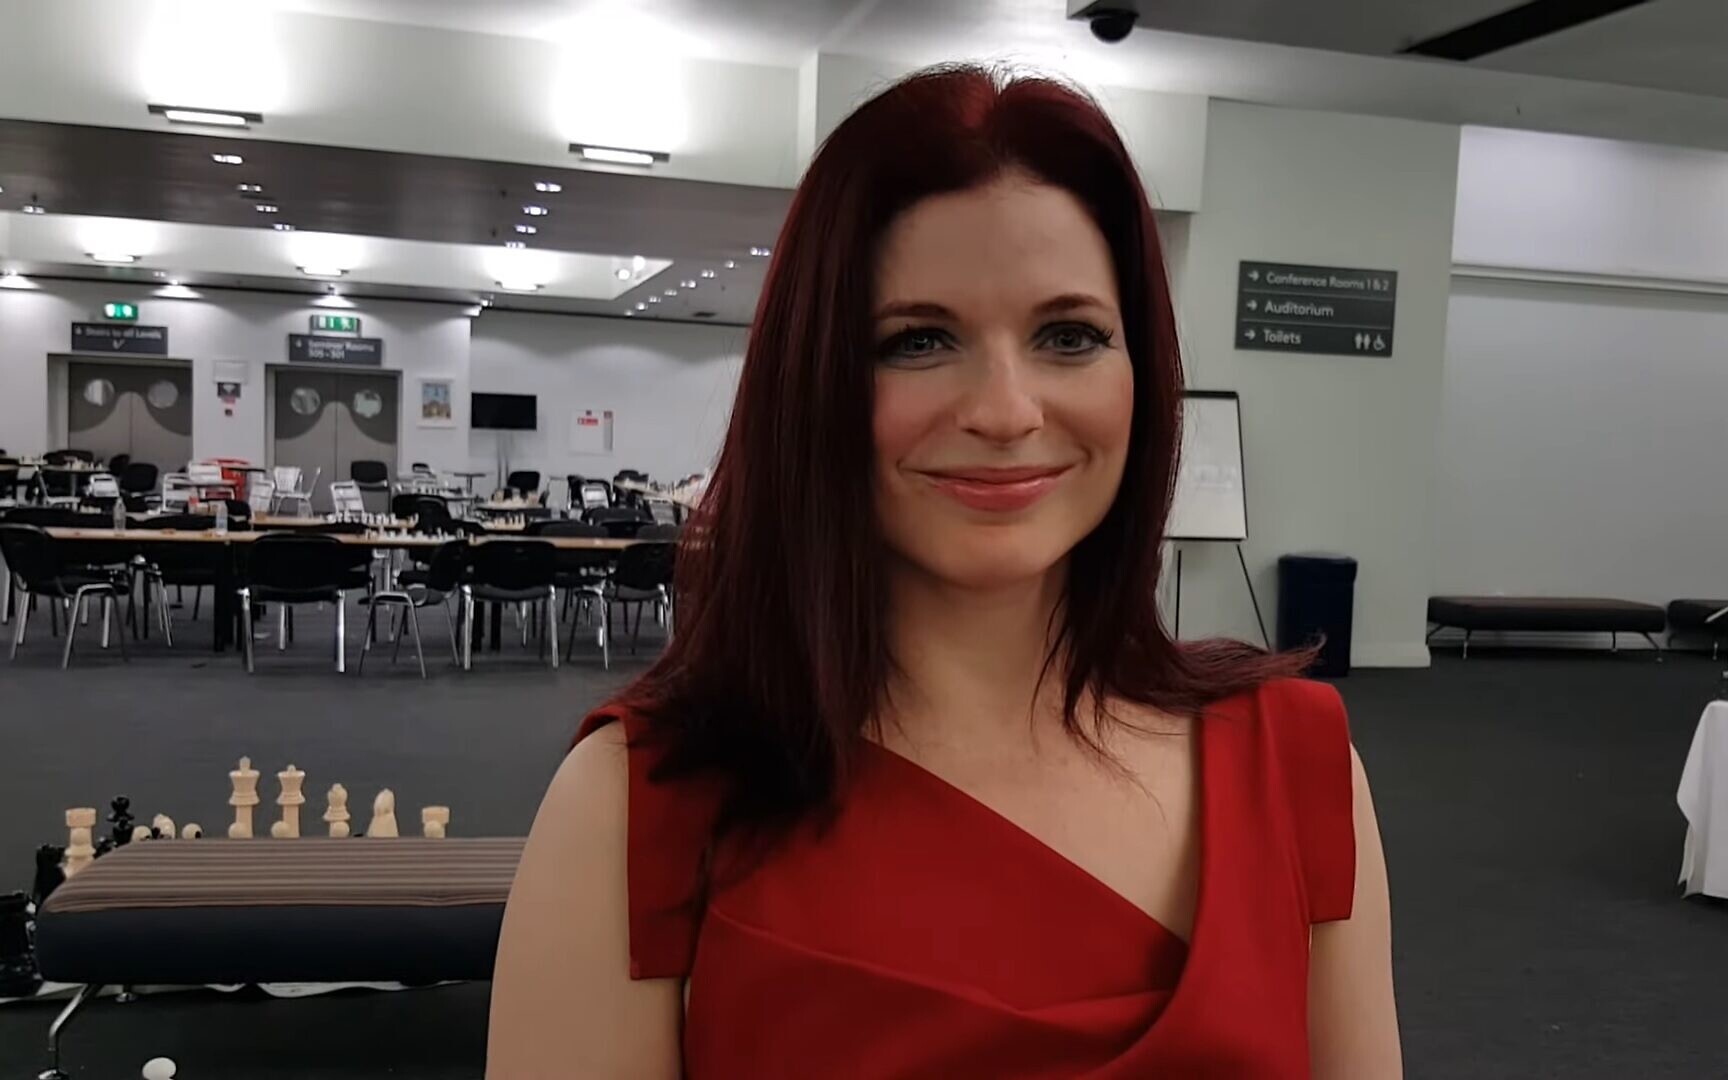 Online Chess Boom Follows 'the Queen's Gambit' Success